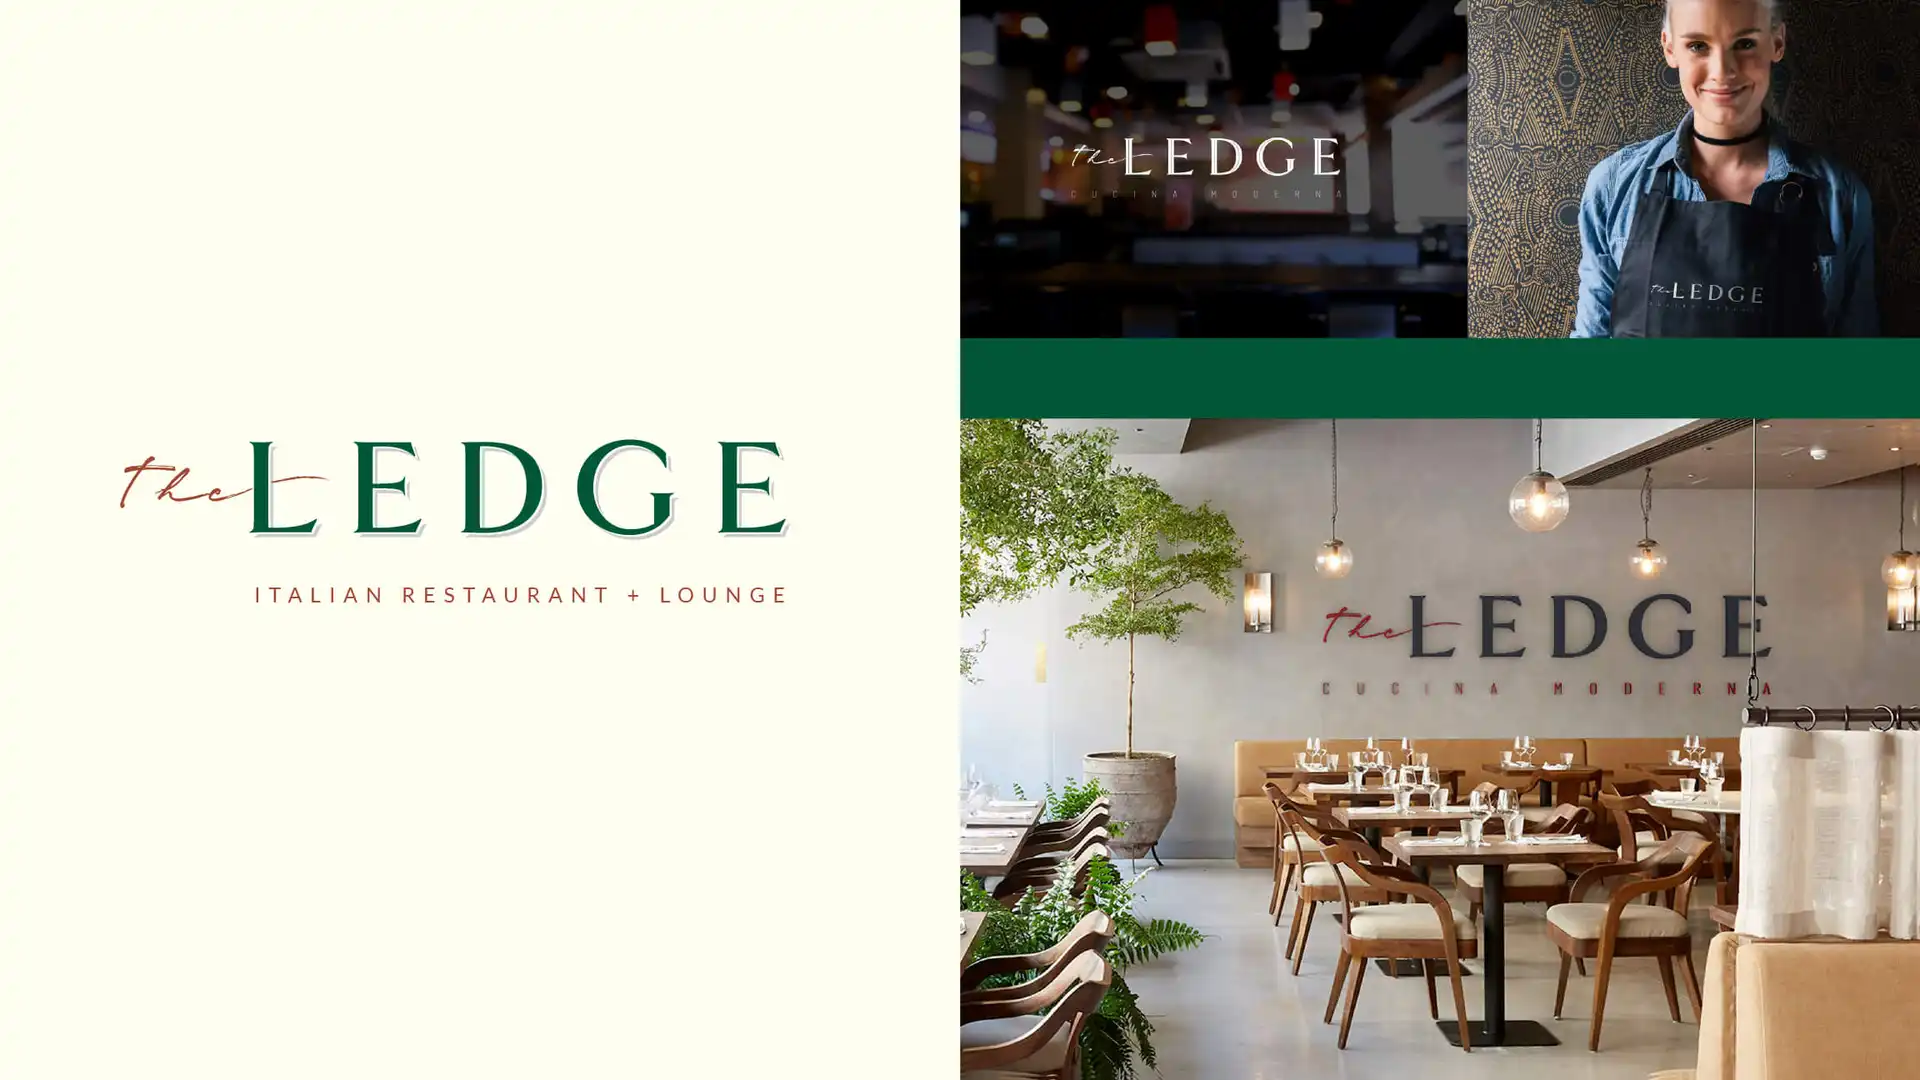 The Ledge Restaurant